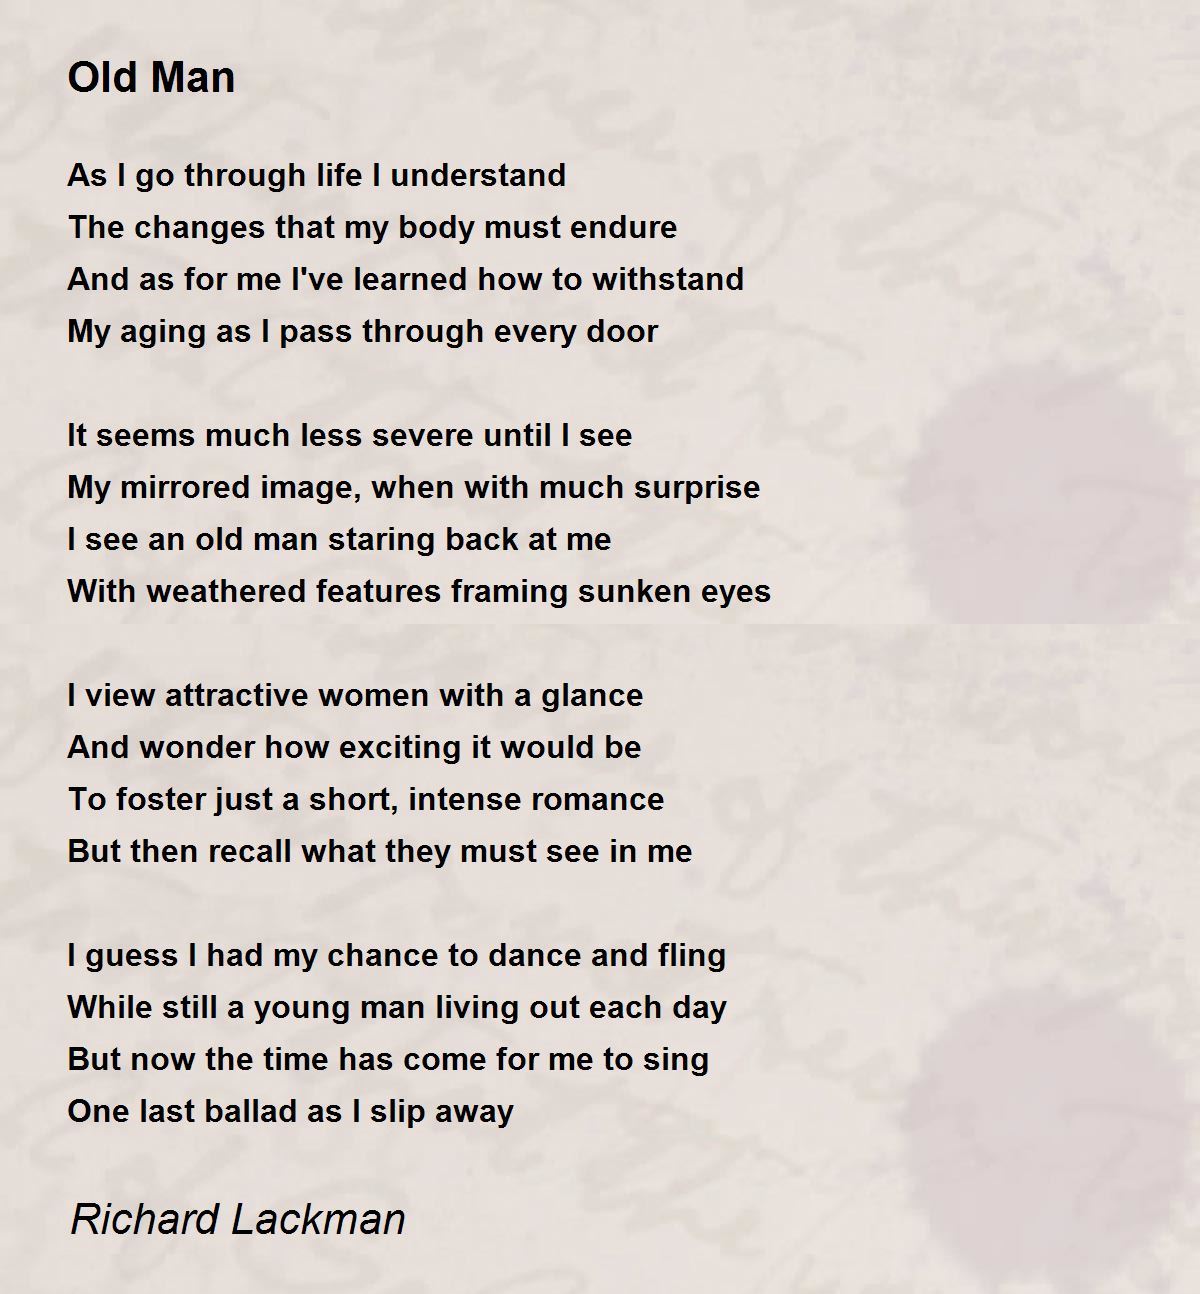 old man old man poem